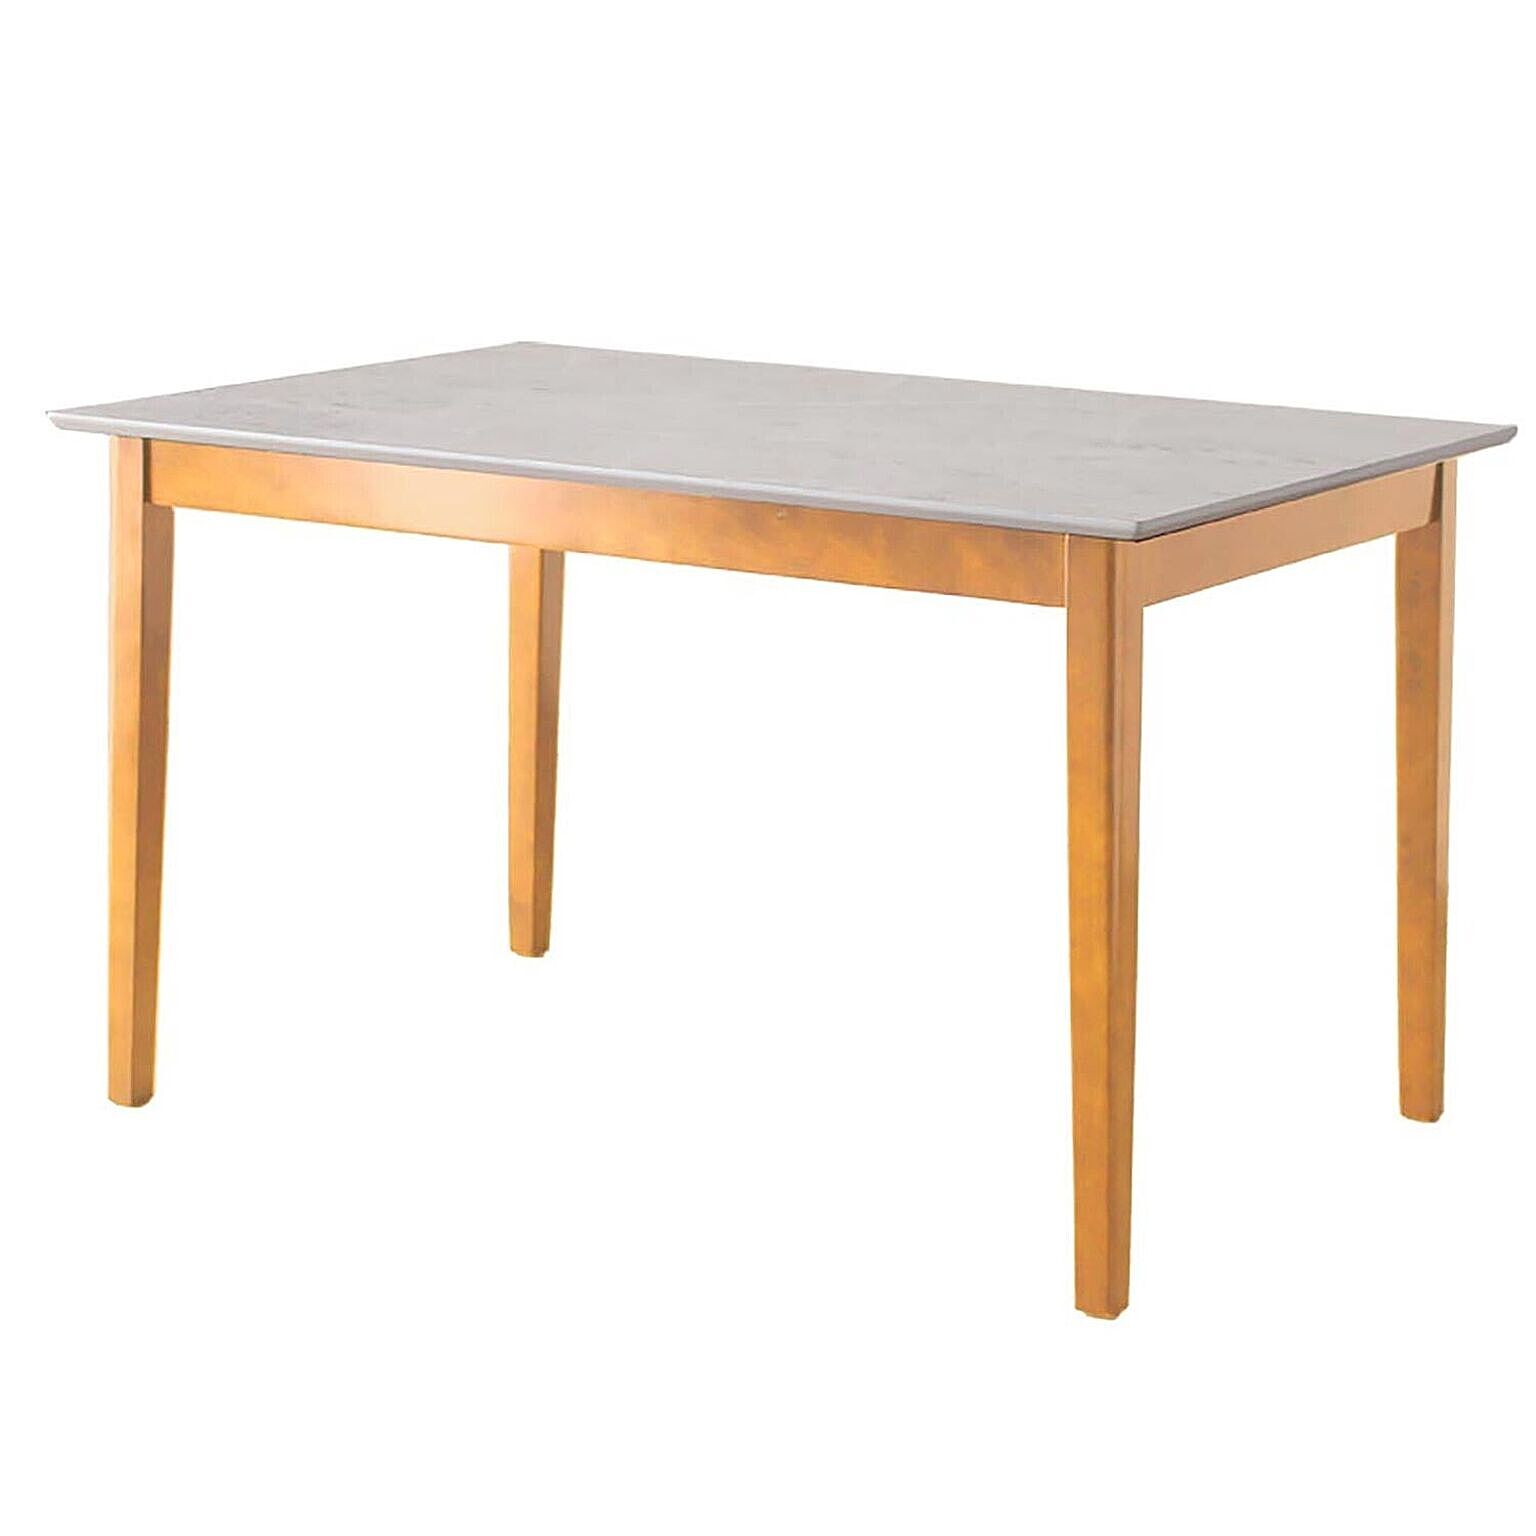 ダイニングテーブル マーブル 120cm 単品 ナチュラル ホワイト 北欧風 ダイニングテーブル テーブル 食卓テーブル 食卓 ダイニング 木製 大理石風 モダン